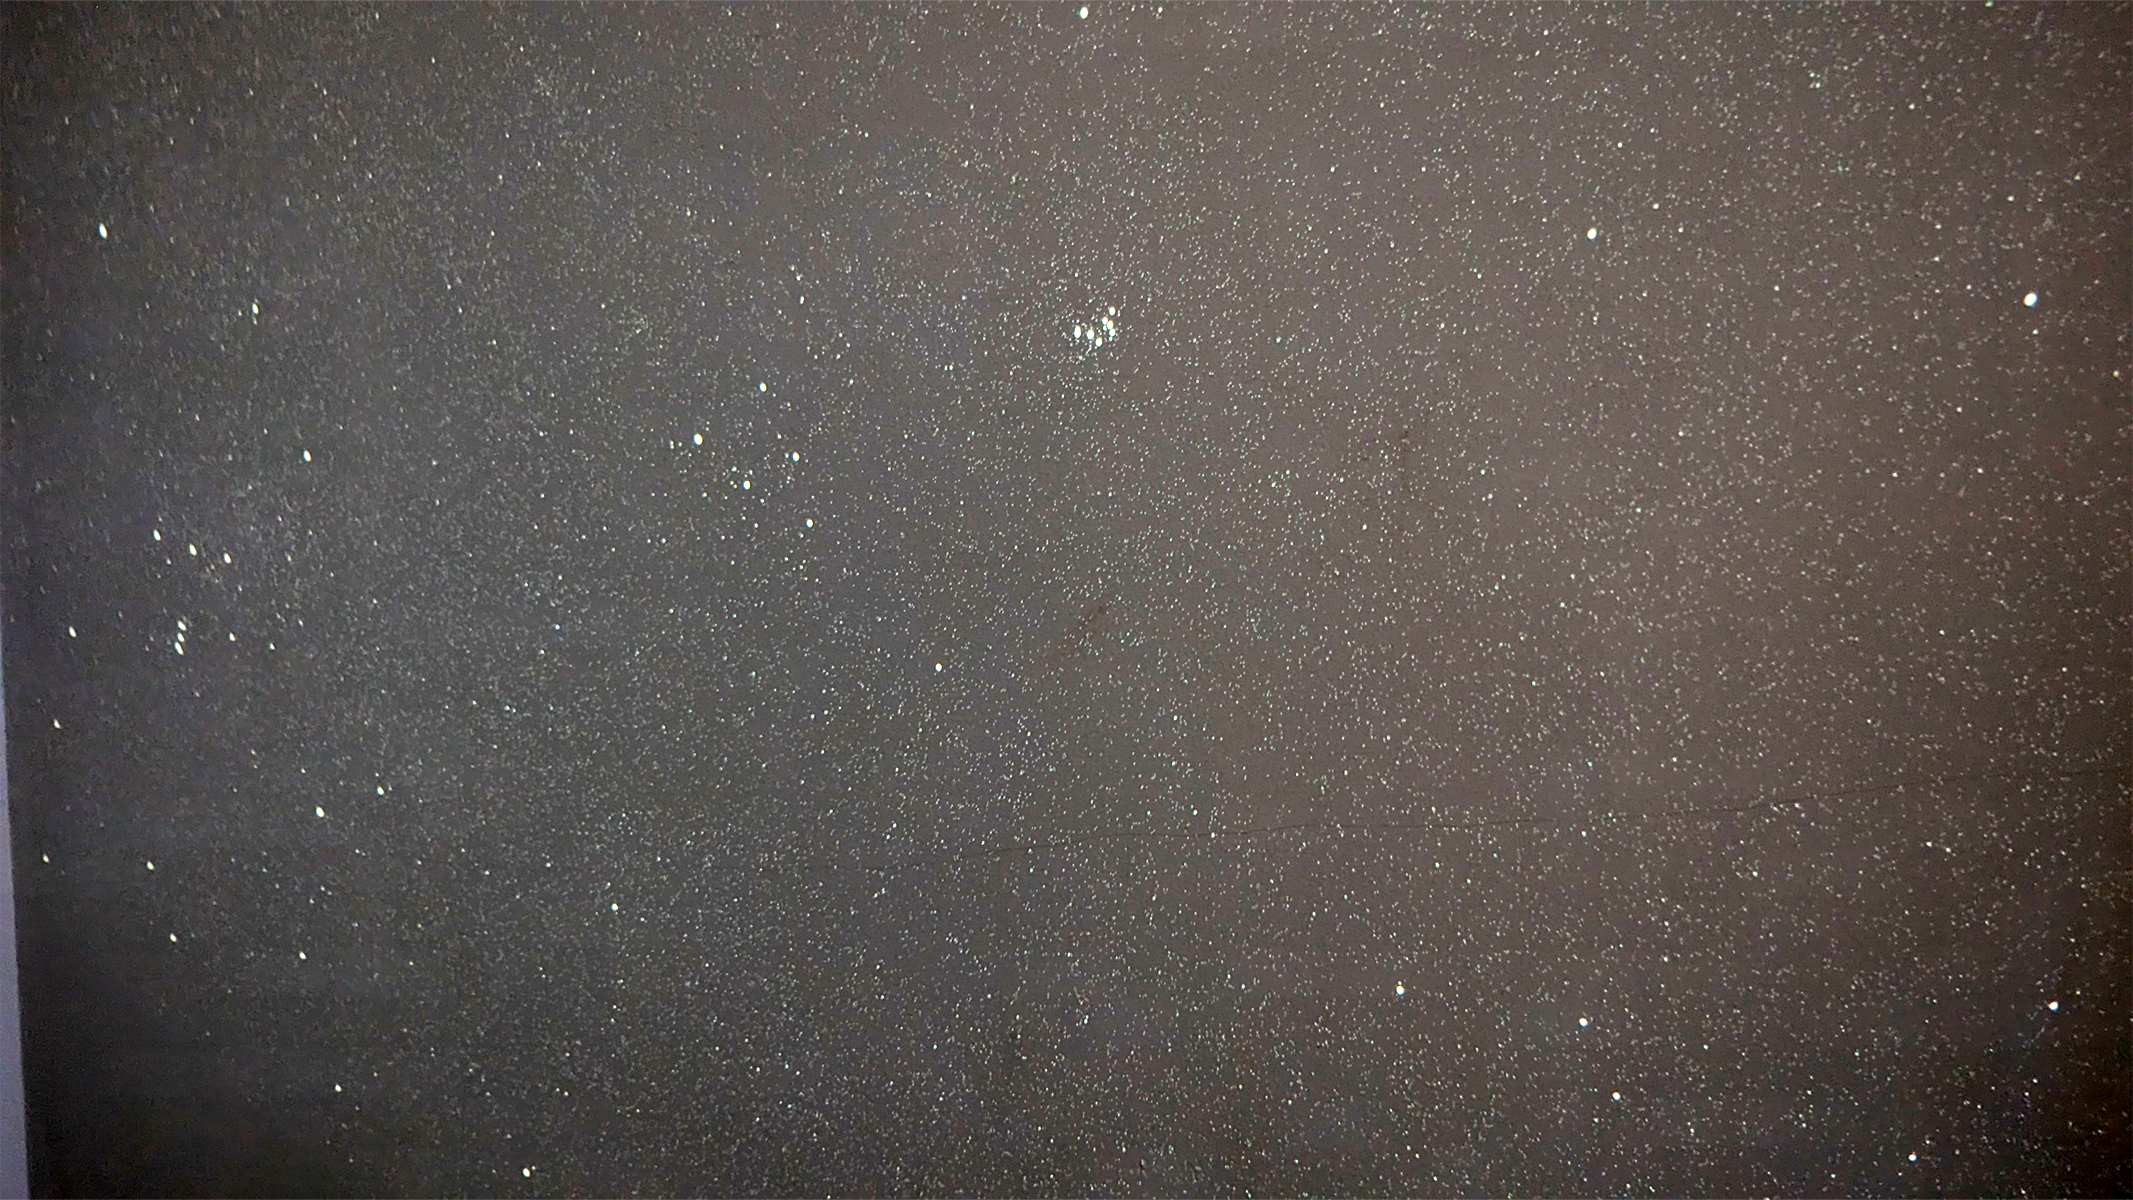 آسمان تاریک DS-FX تصویر ستاره ای از ستاره های نیمکره شمالی است